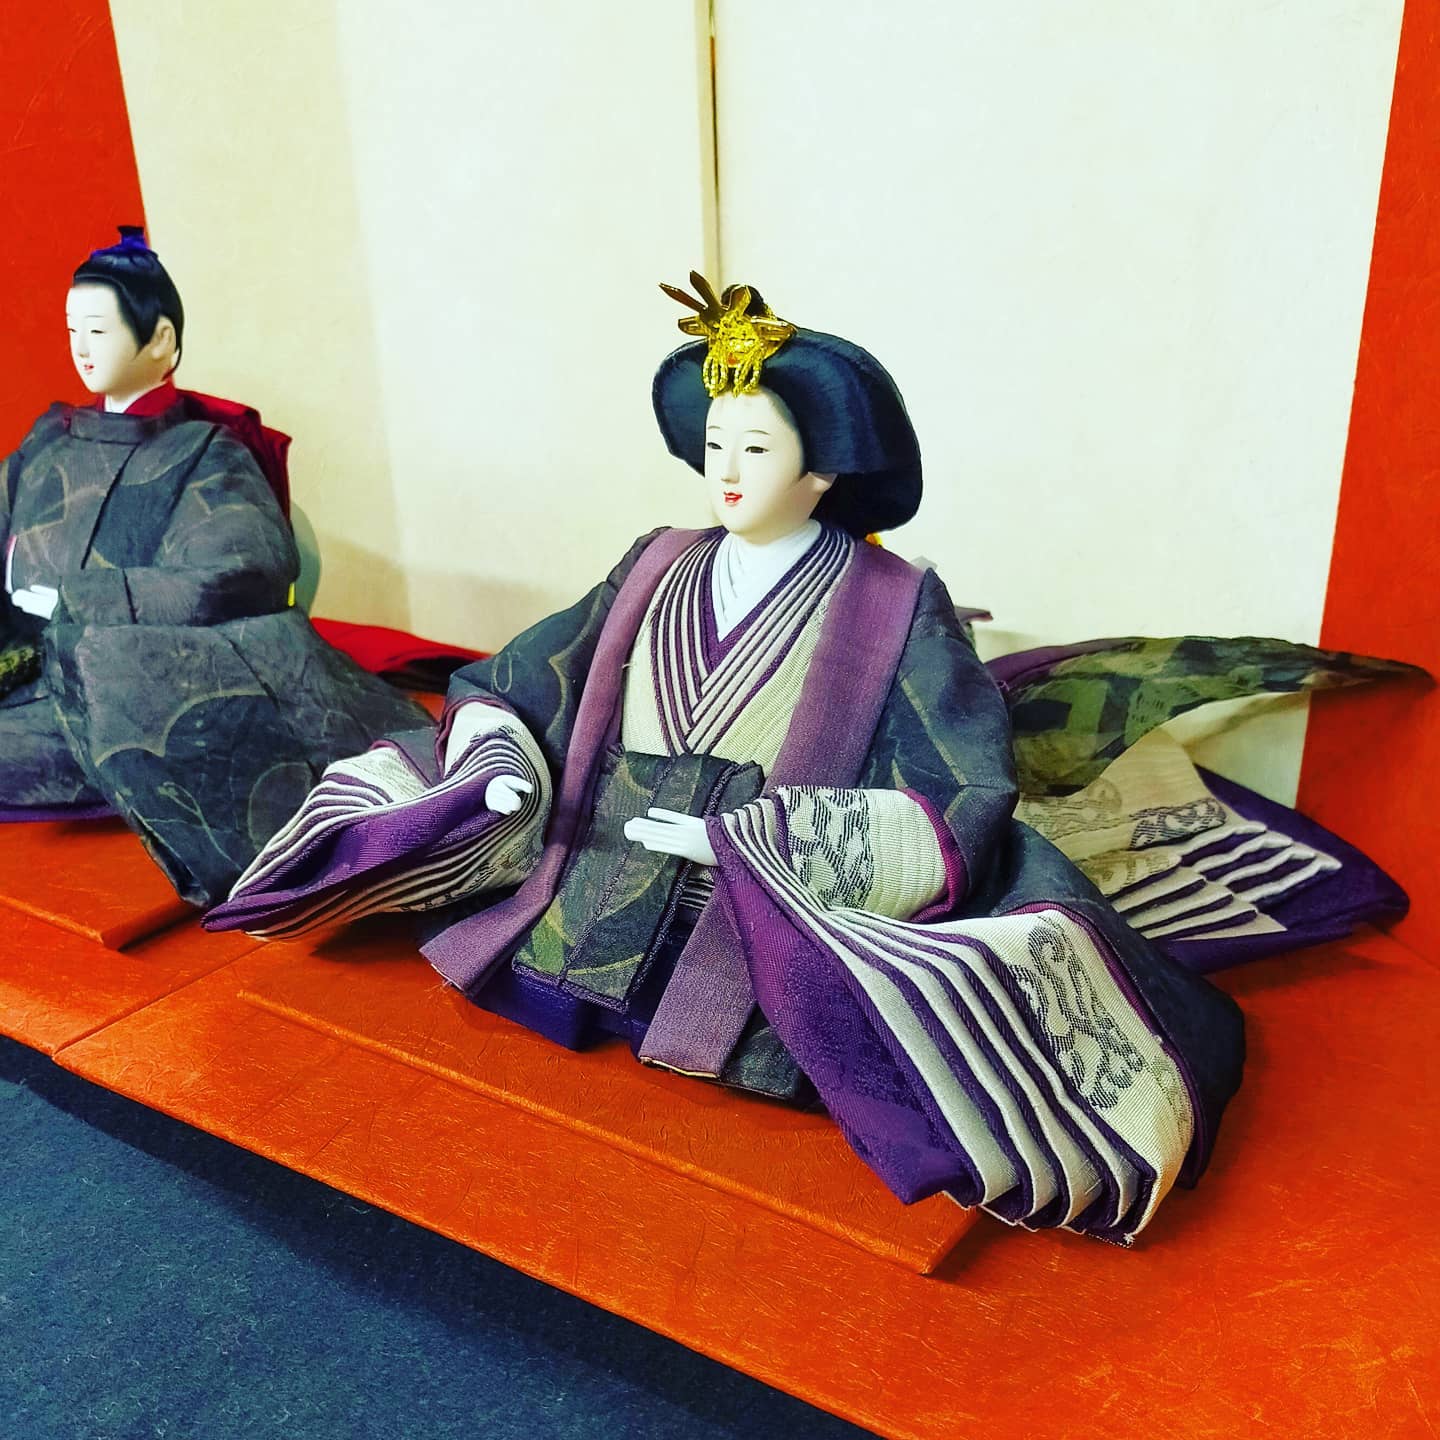 有松鳴海絞り衣装のお雛様- from Instagram